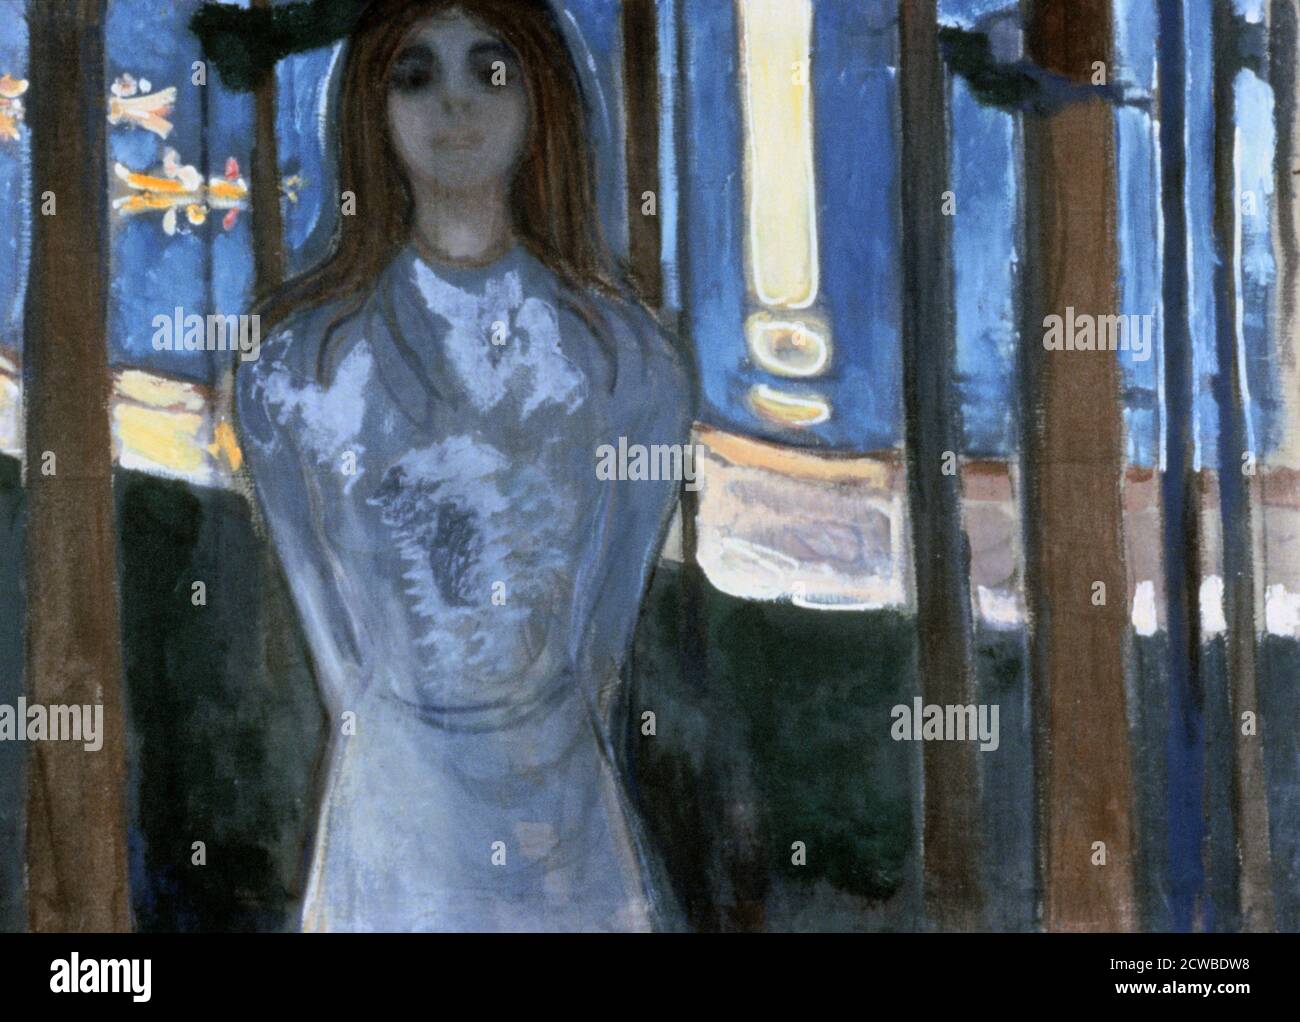 The Voice“, 1893. Künstler: Edvard Munch. Edvard Munch ist ein norwegischer Maler, Expressionist und Drucker. Er spielte eine große Rolle im deutschen Expressionismus. Stockfoto